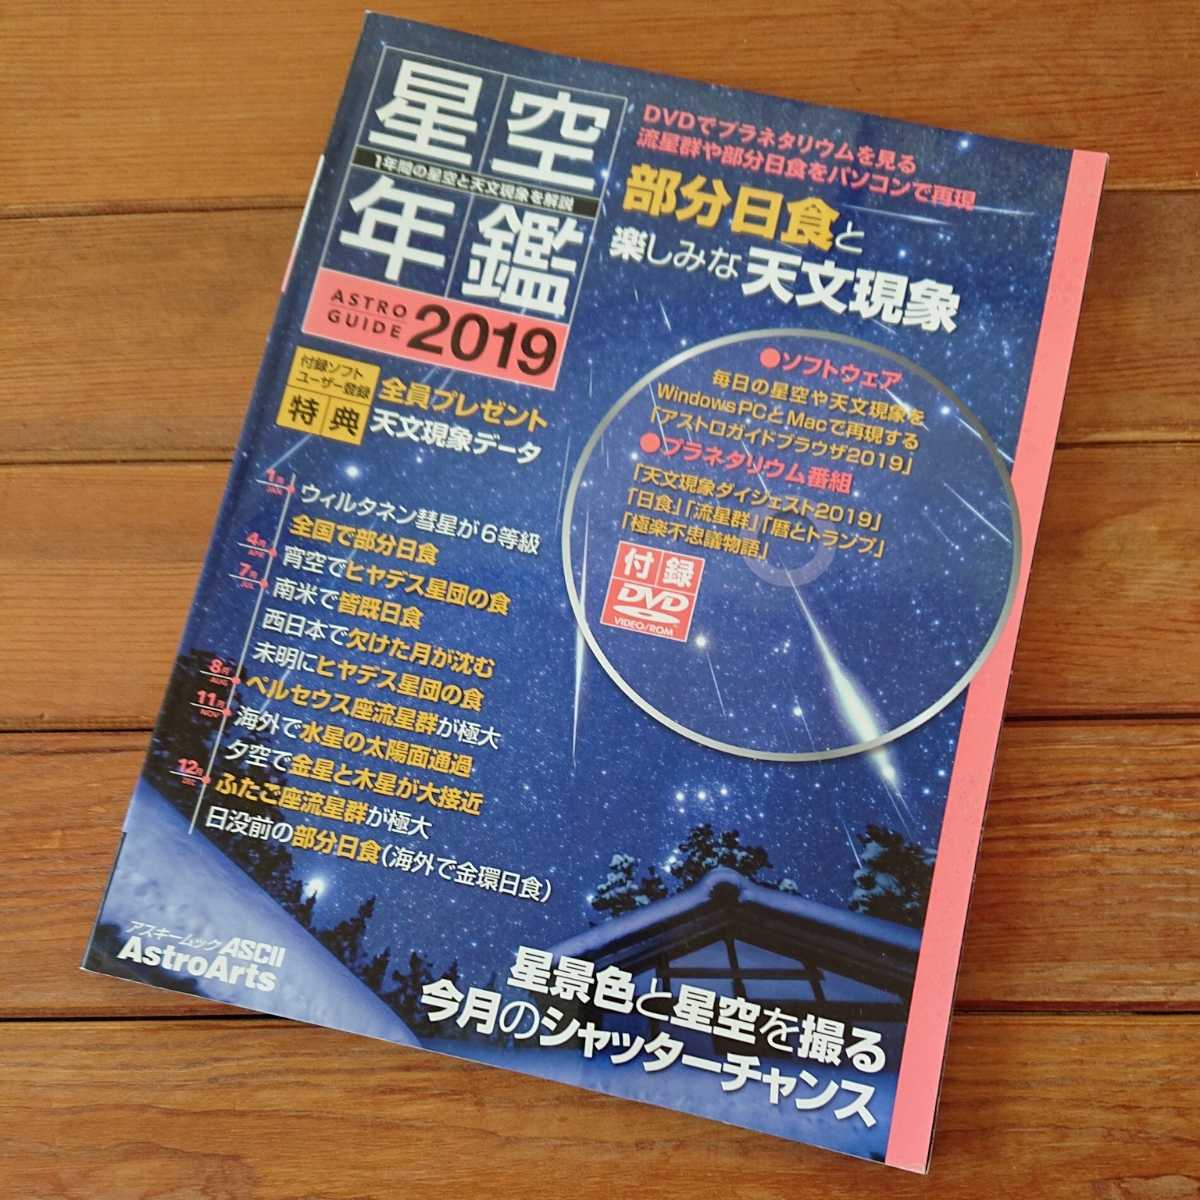  бесплатная доставка * обычная цена \\2750 DVD есть звезда пустой ежегодник 2019 Astro гид Astro a-tsu